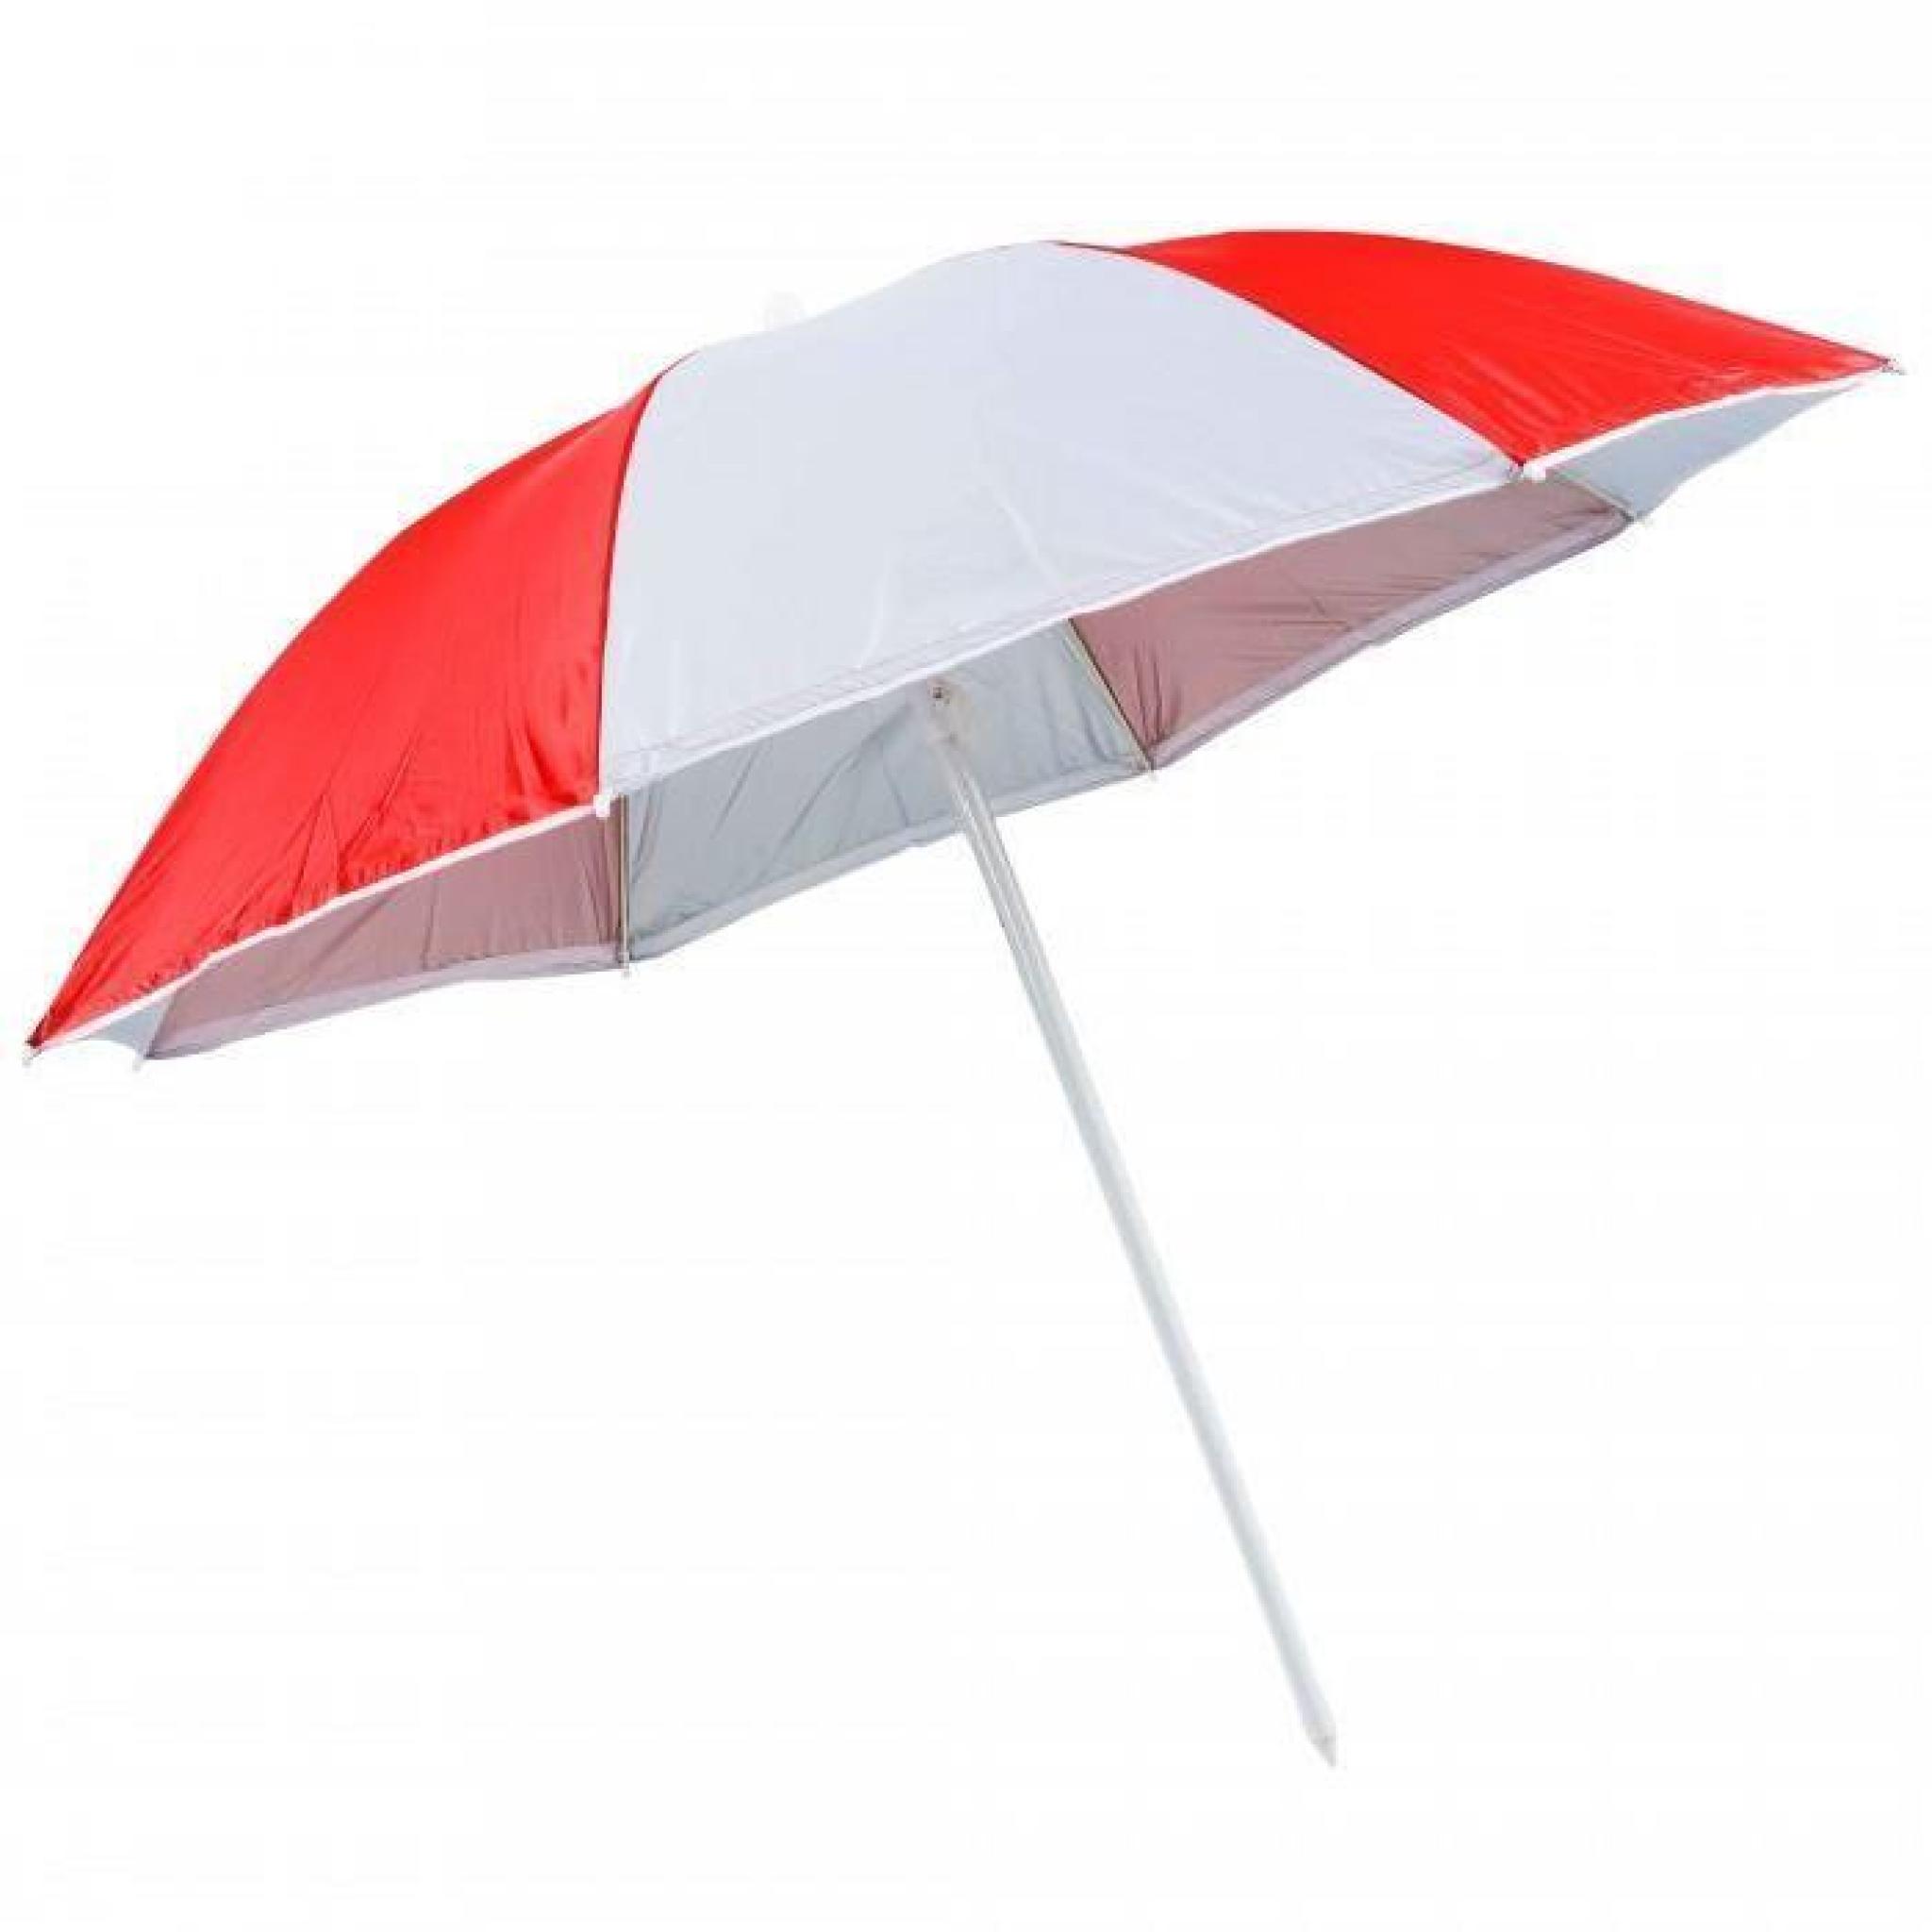 Parasol de plage bicolore rouge et blanc, reflechit les UV jusqu'a 98%. Diametre du parasol 150cm. Parasol avec rabat pas cher